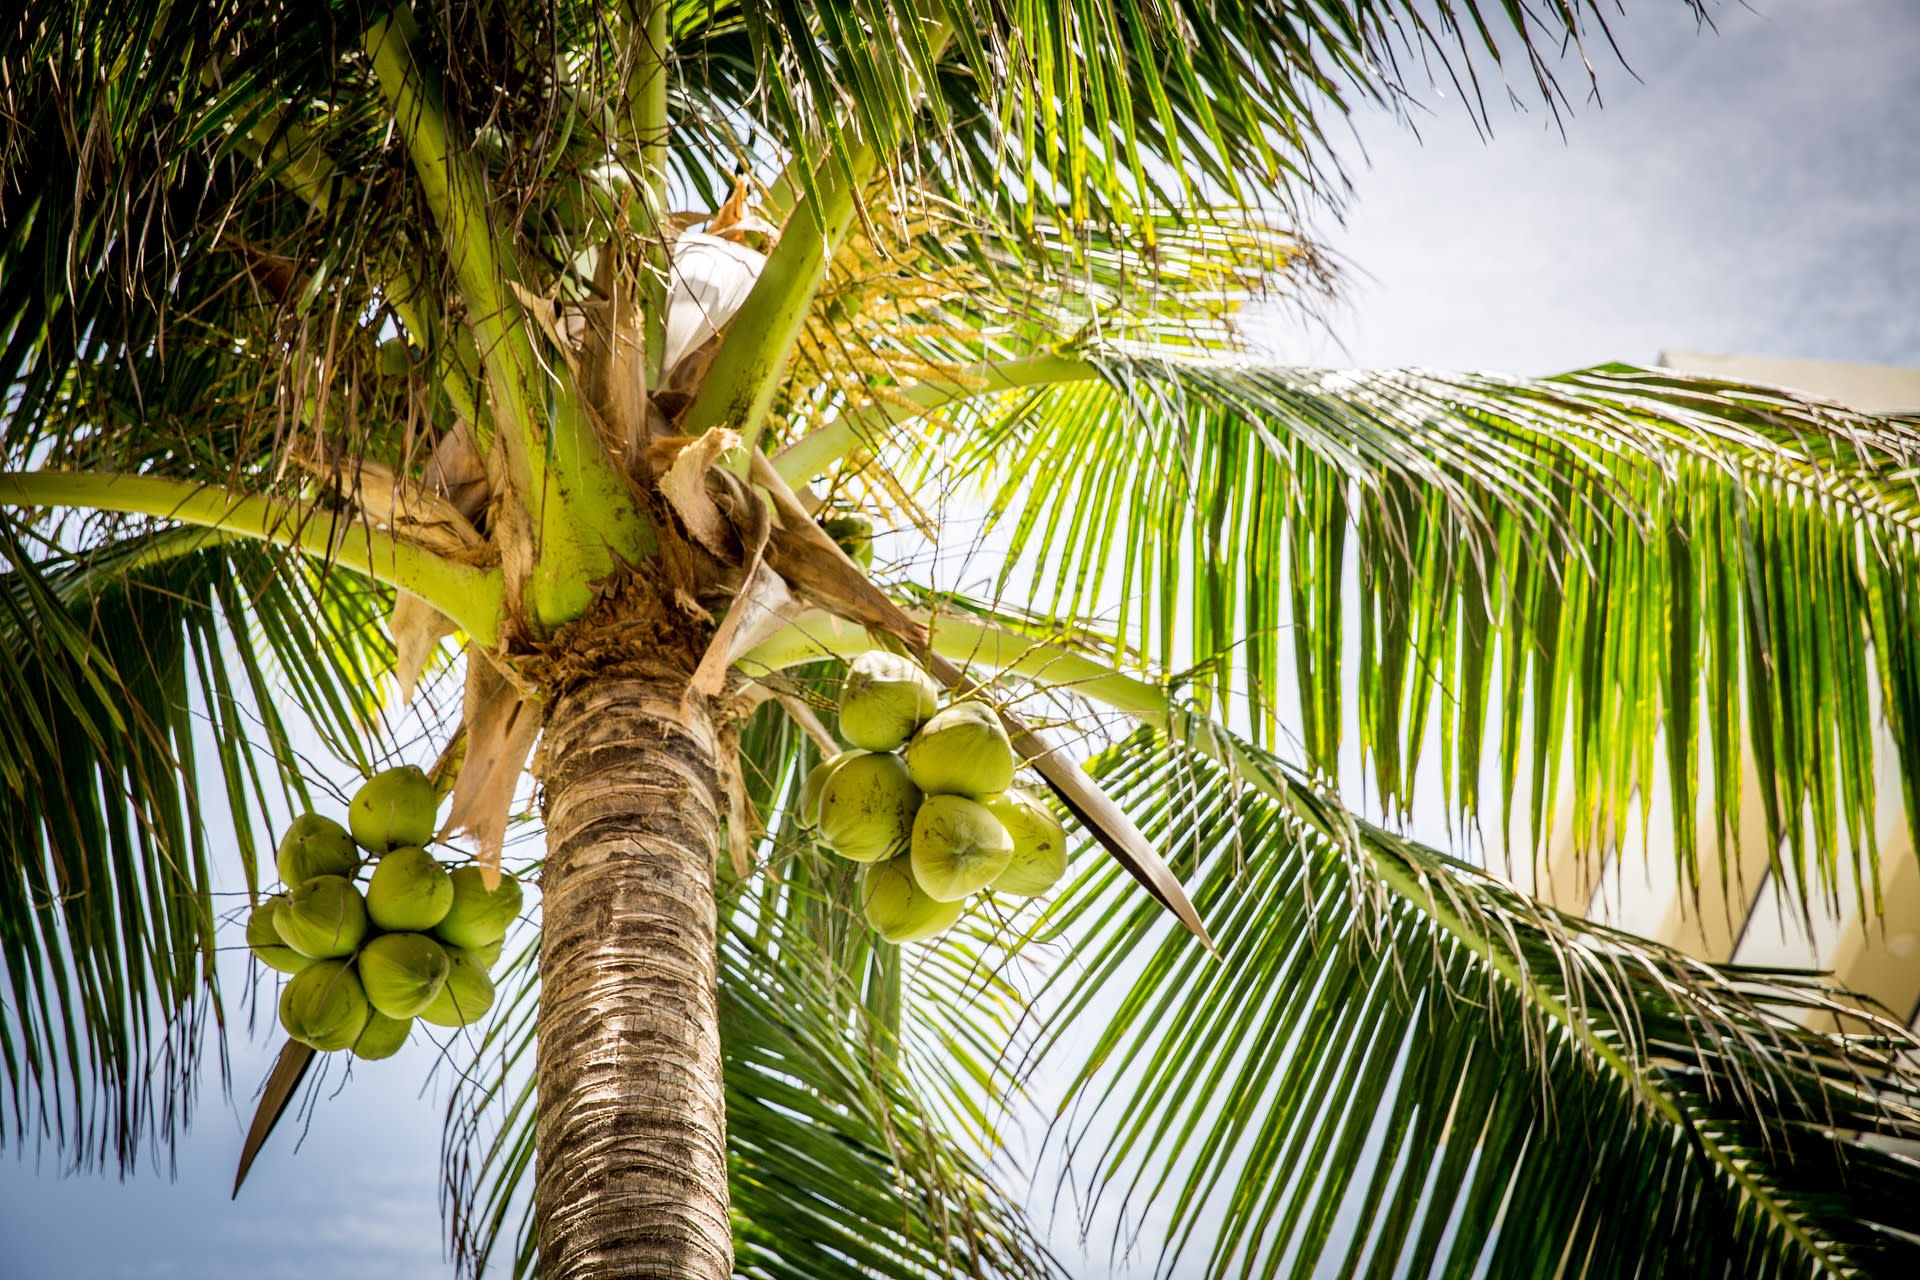 Kácení tropických lesů kvůli produkci palmového oleje je dlouhodobě kritizováno. Nová studie ovšem porovnala počet ohrožených druhů na litr vyprodukovaného oleje a ukázala, že nebezpečnější než palmový či jiné druhy rostlinných olejů je olej kokosový. Zdroj: University of Exeter 